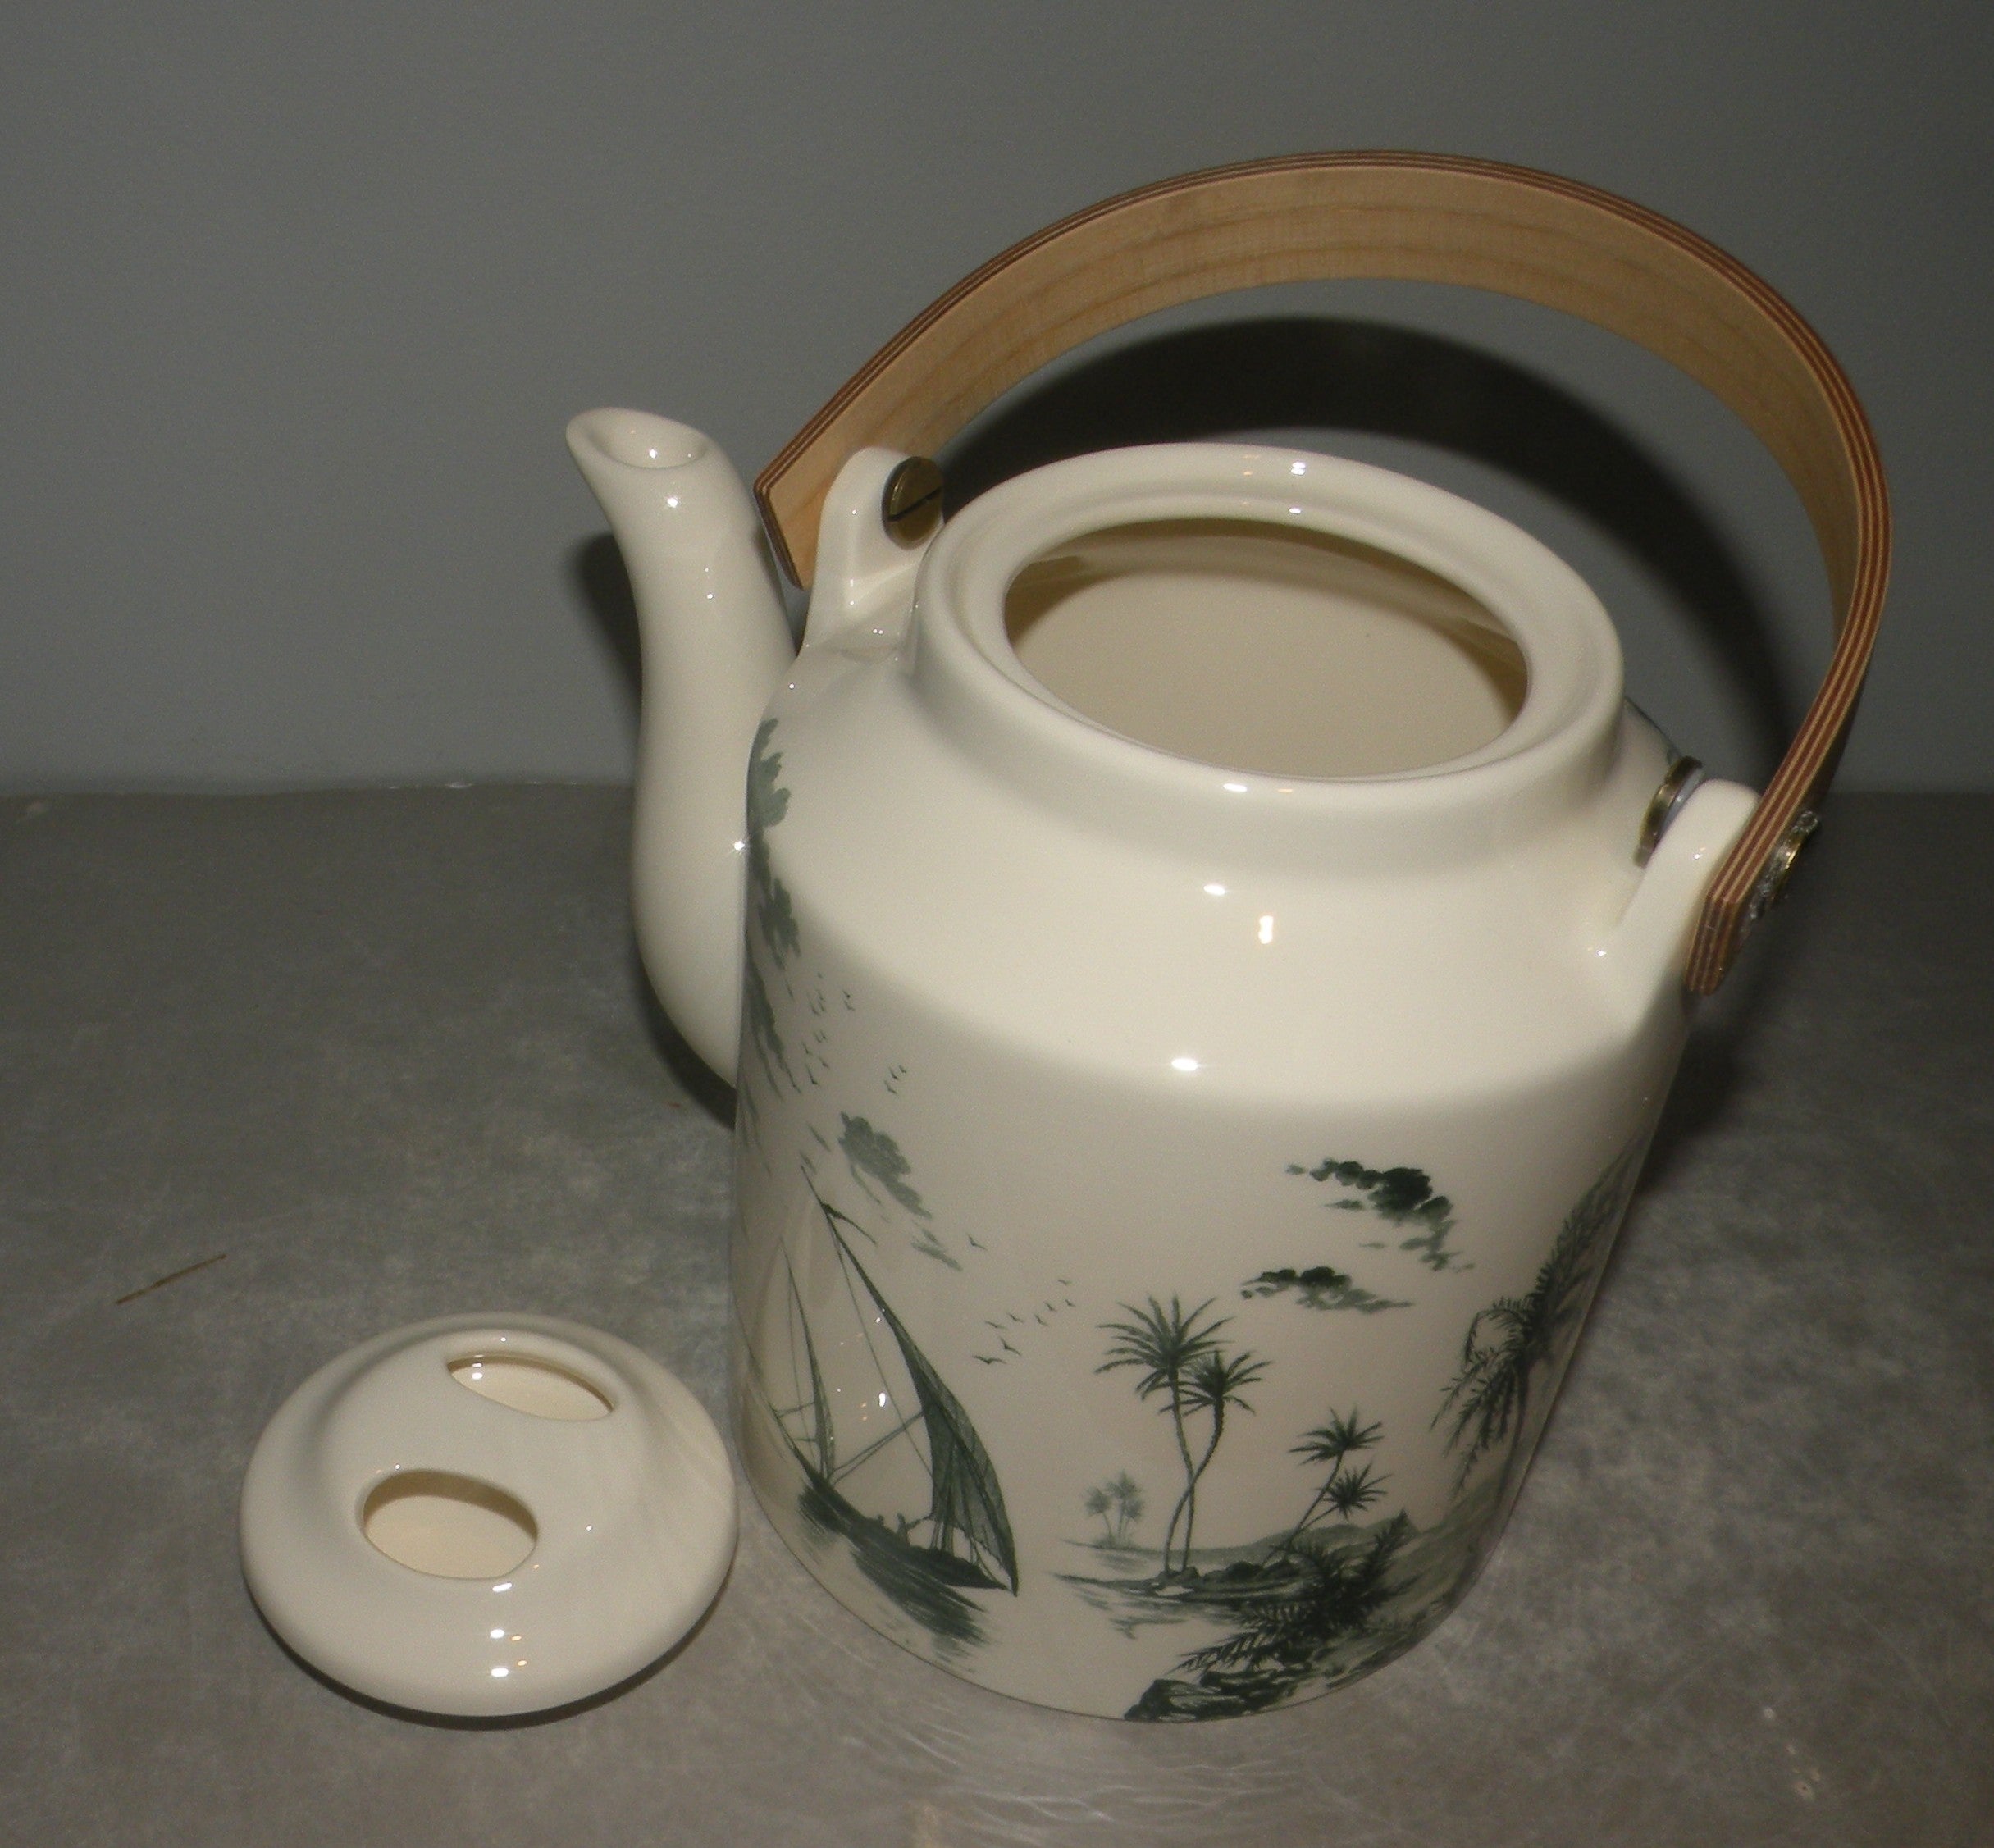 Japanese teapot , Vue d'Orient , Les Depareillees